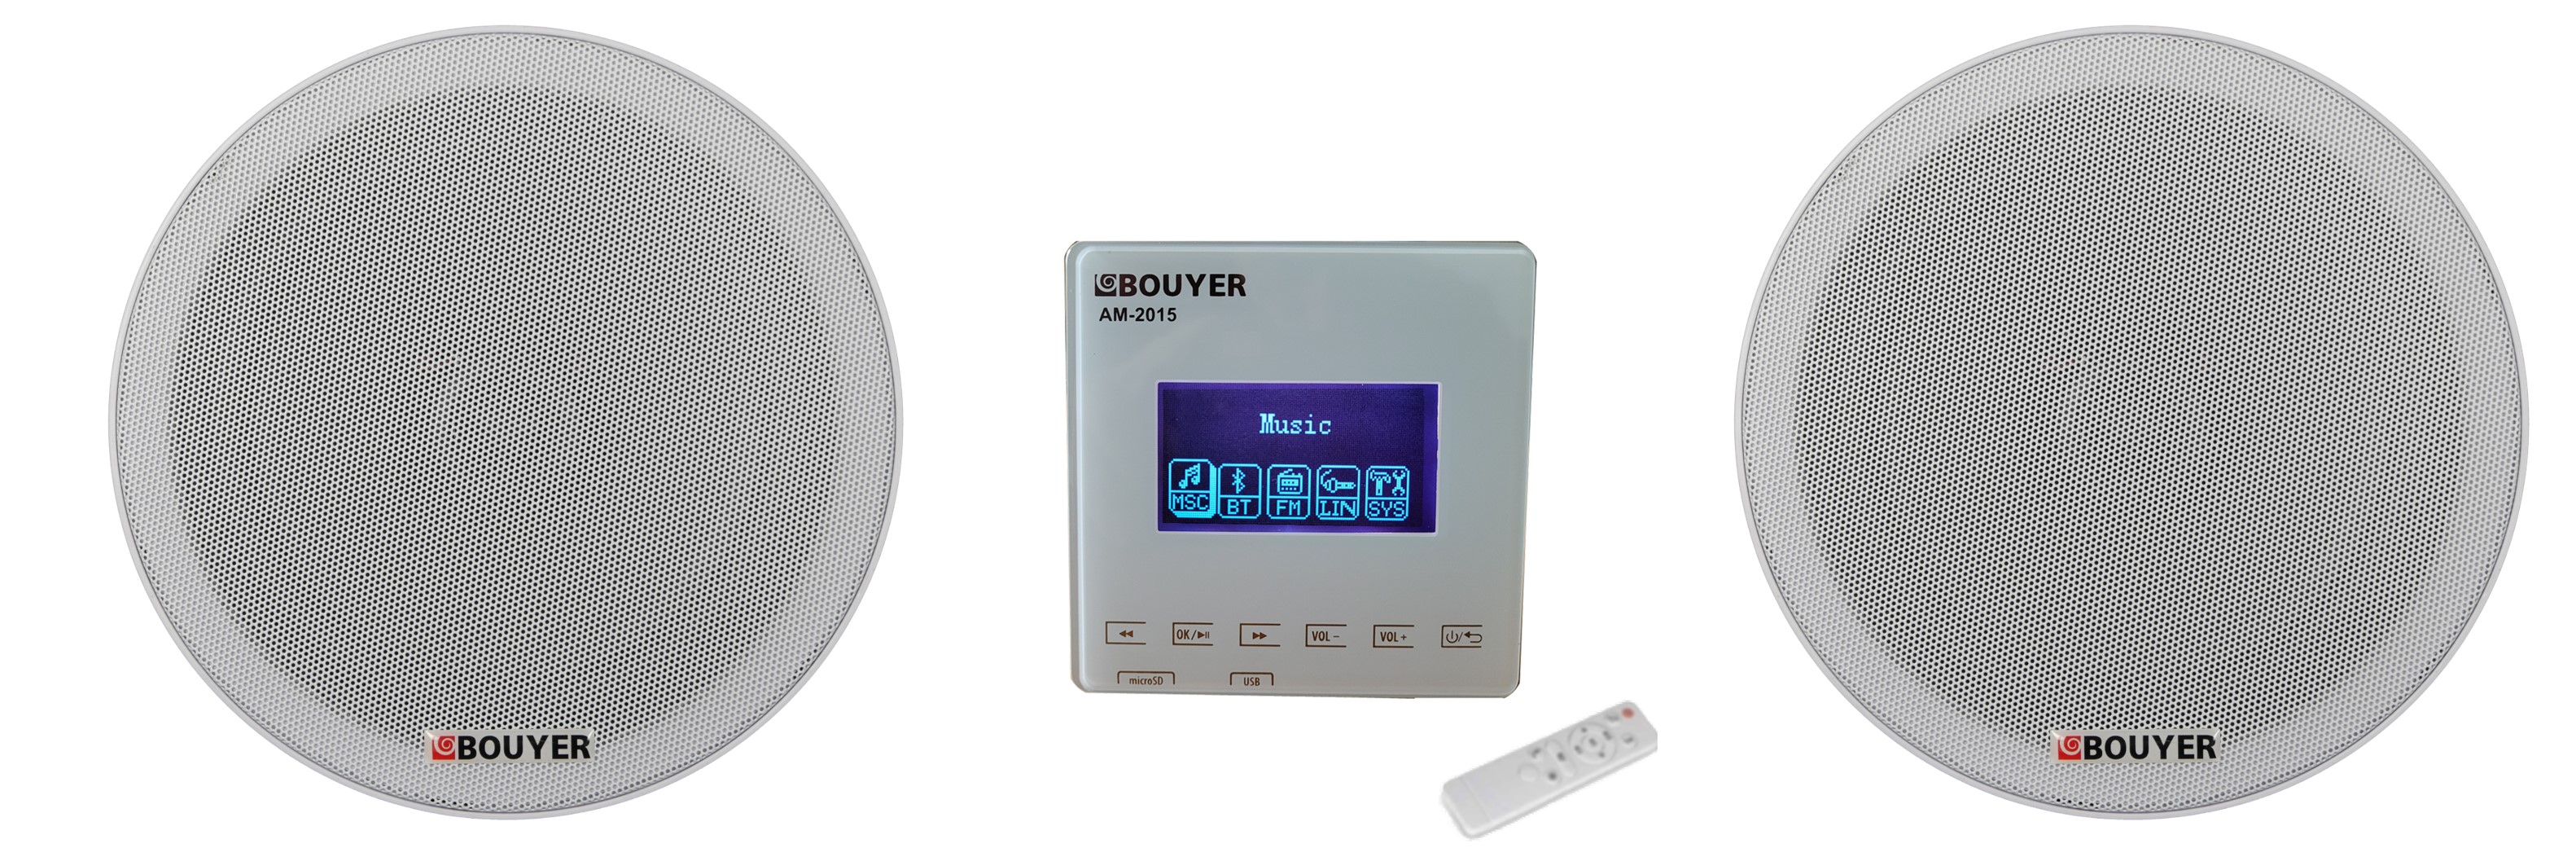 BOUYER - Nos produits - IP & Supervision – Convertisseur audio